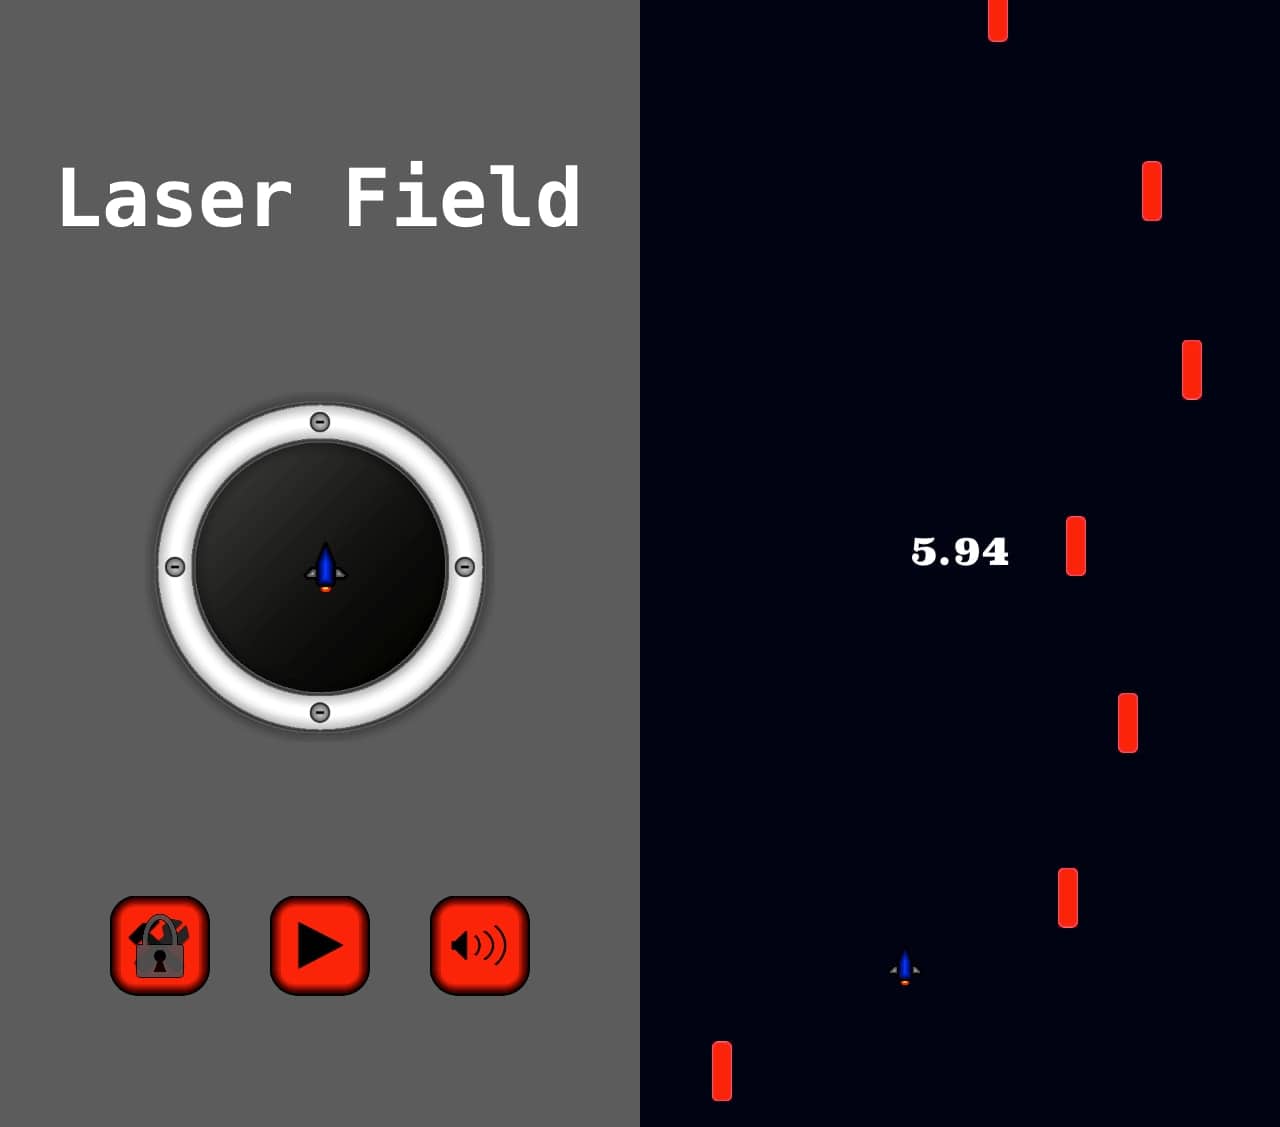 Laser Field